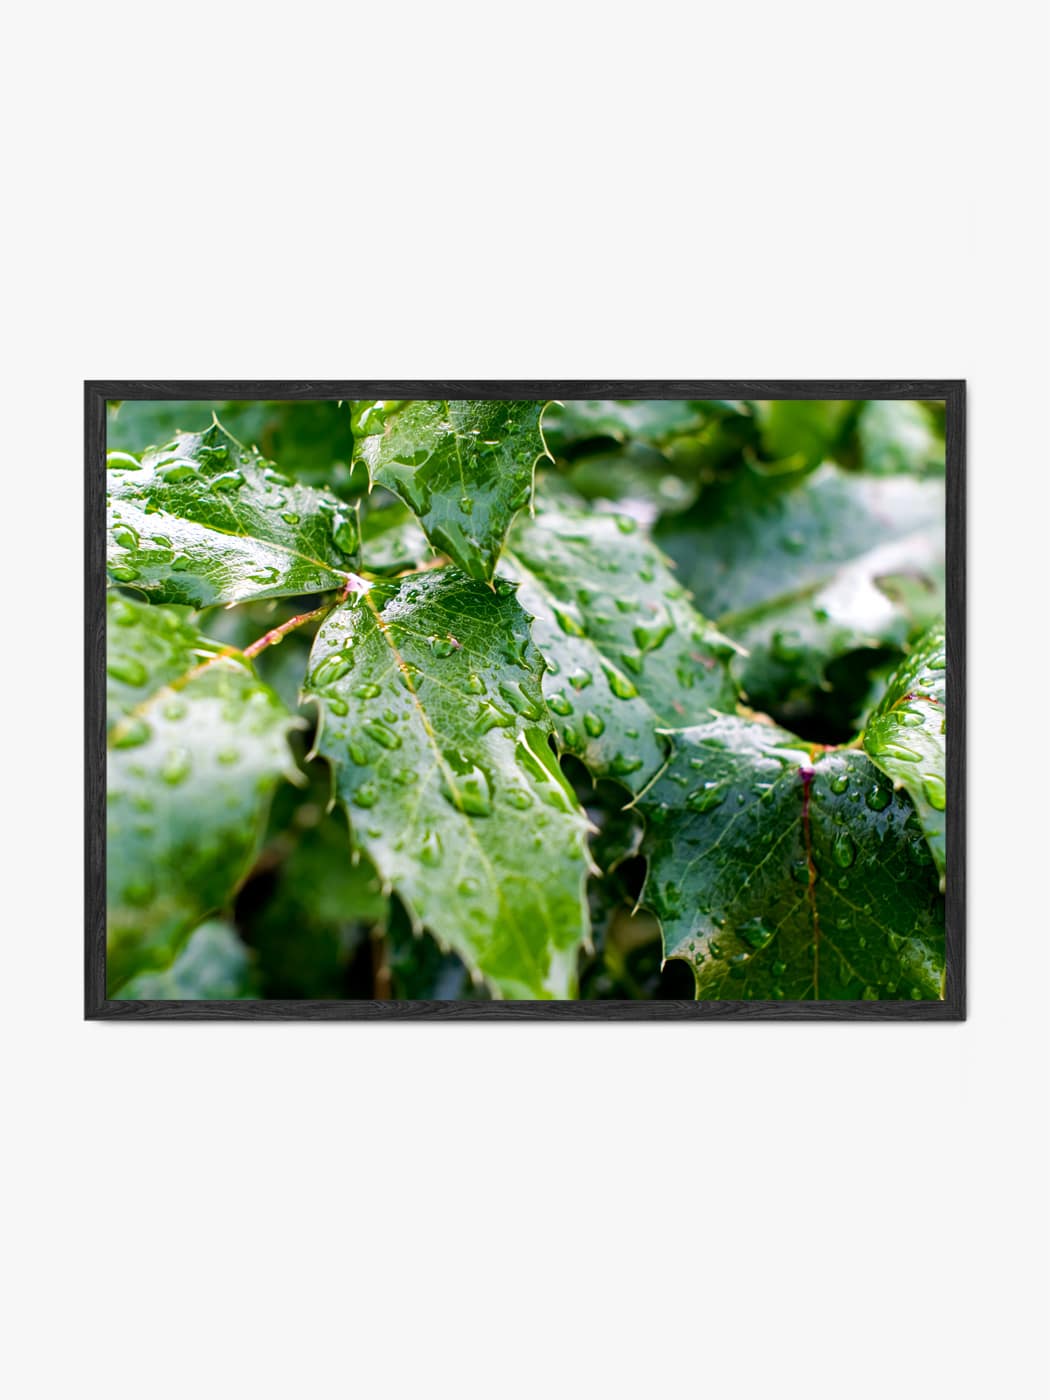 Obraz akustyczny ze zdjęcia - Krople wody na liściach po deszczu - Piotr Łabuzek